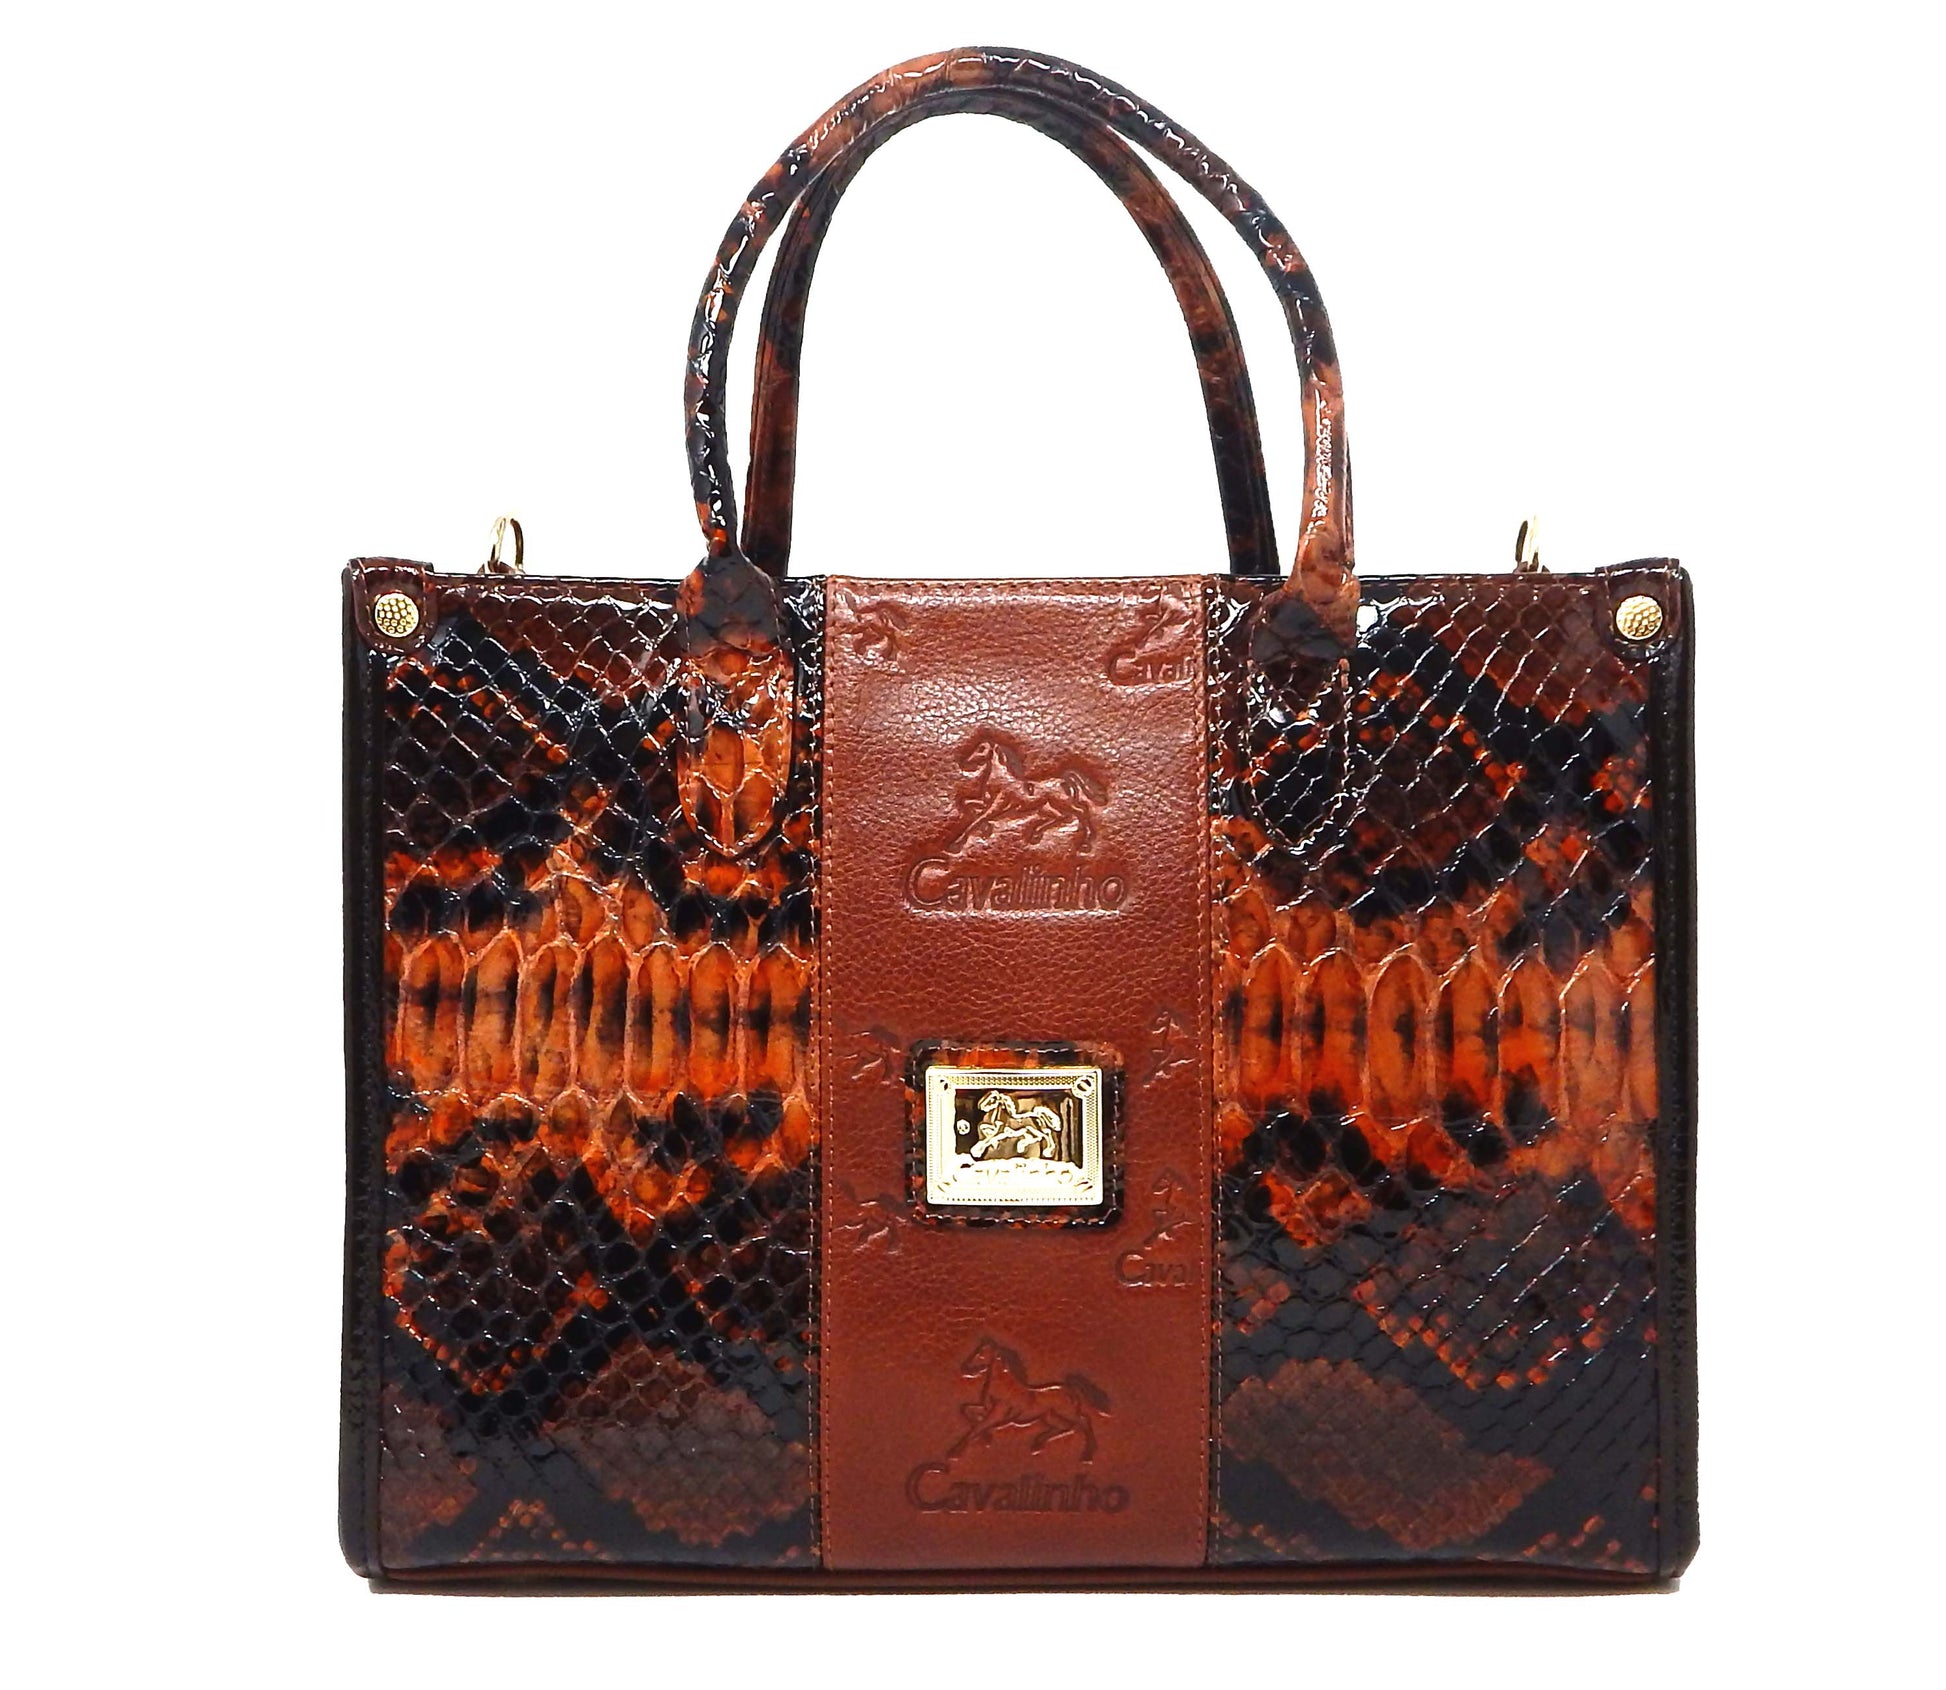 #color_ SaddleBrown | Cavalinho Honor Handbag - SaddleBrown - 18190423.13.99_1